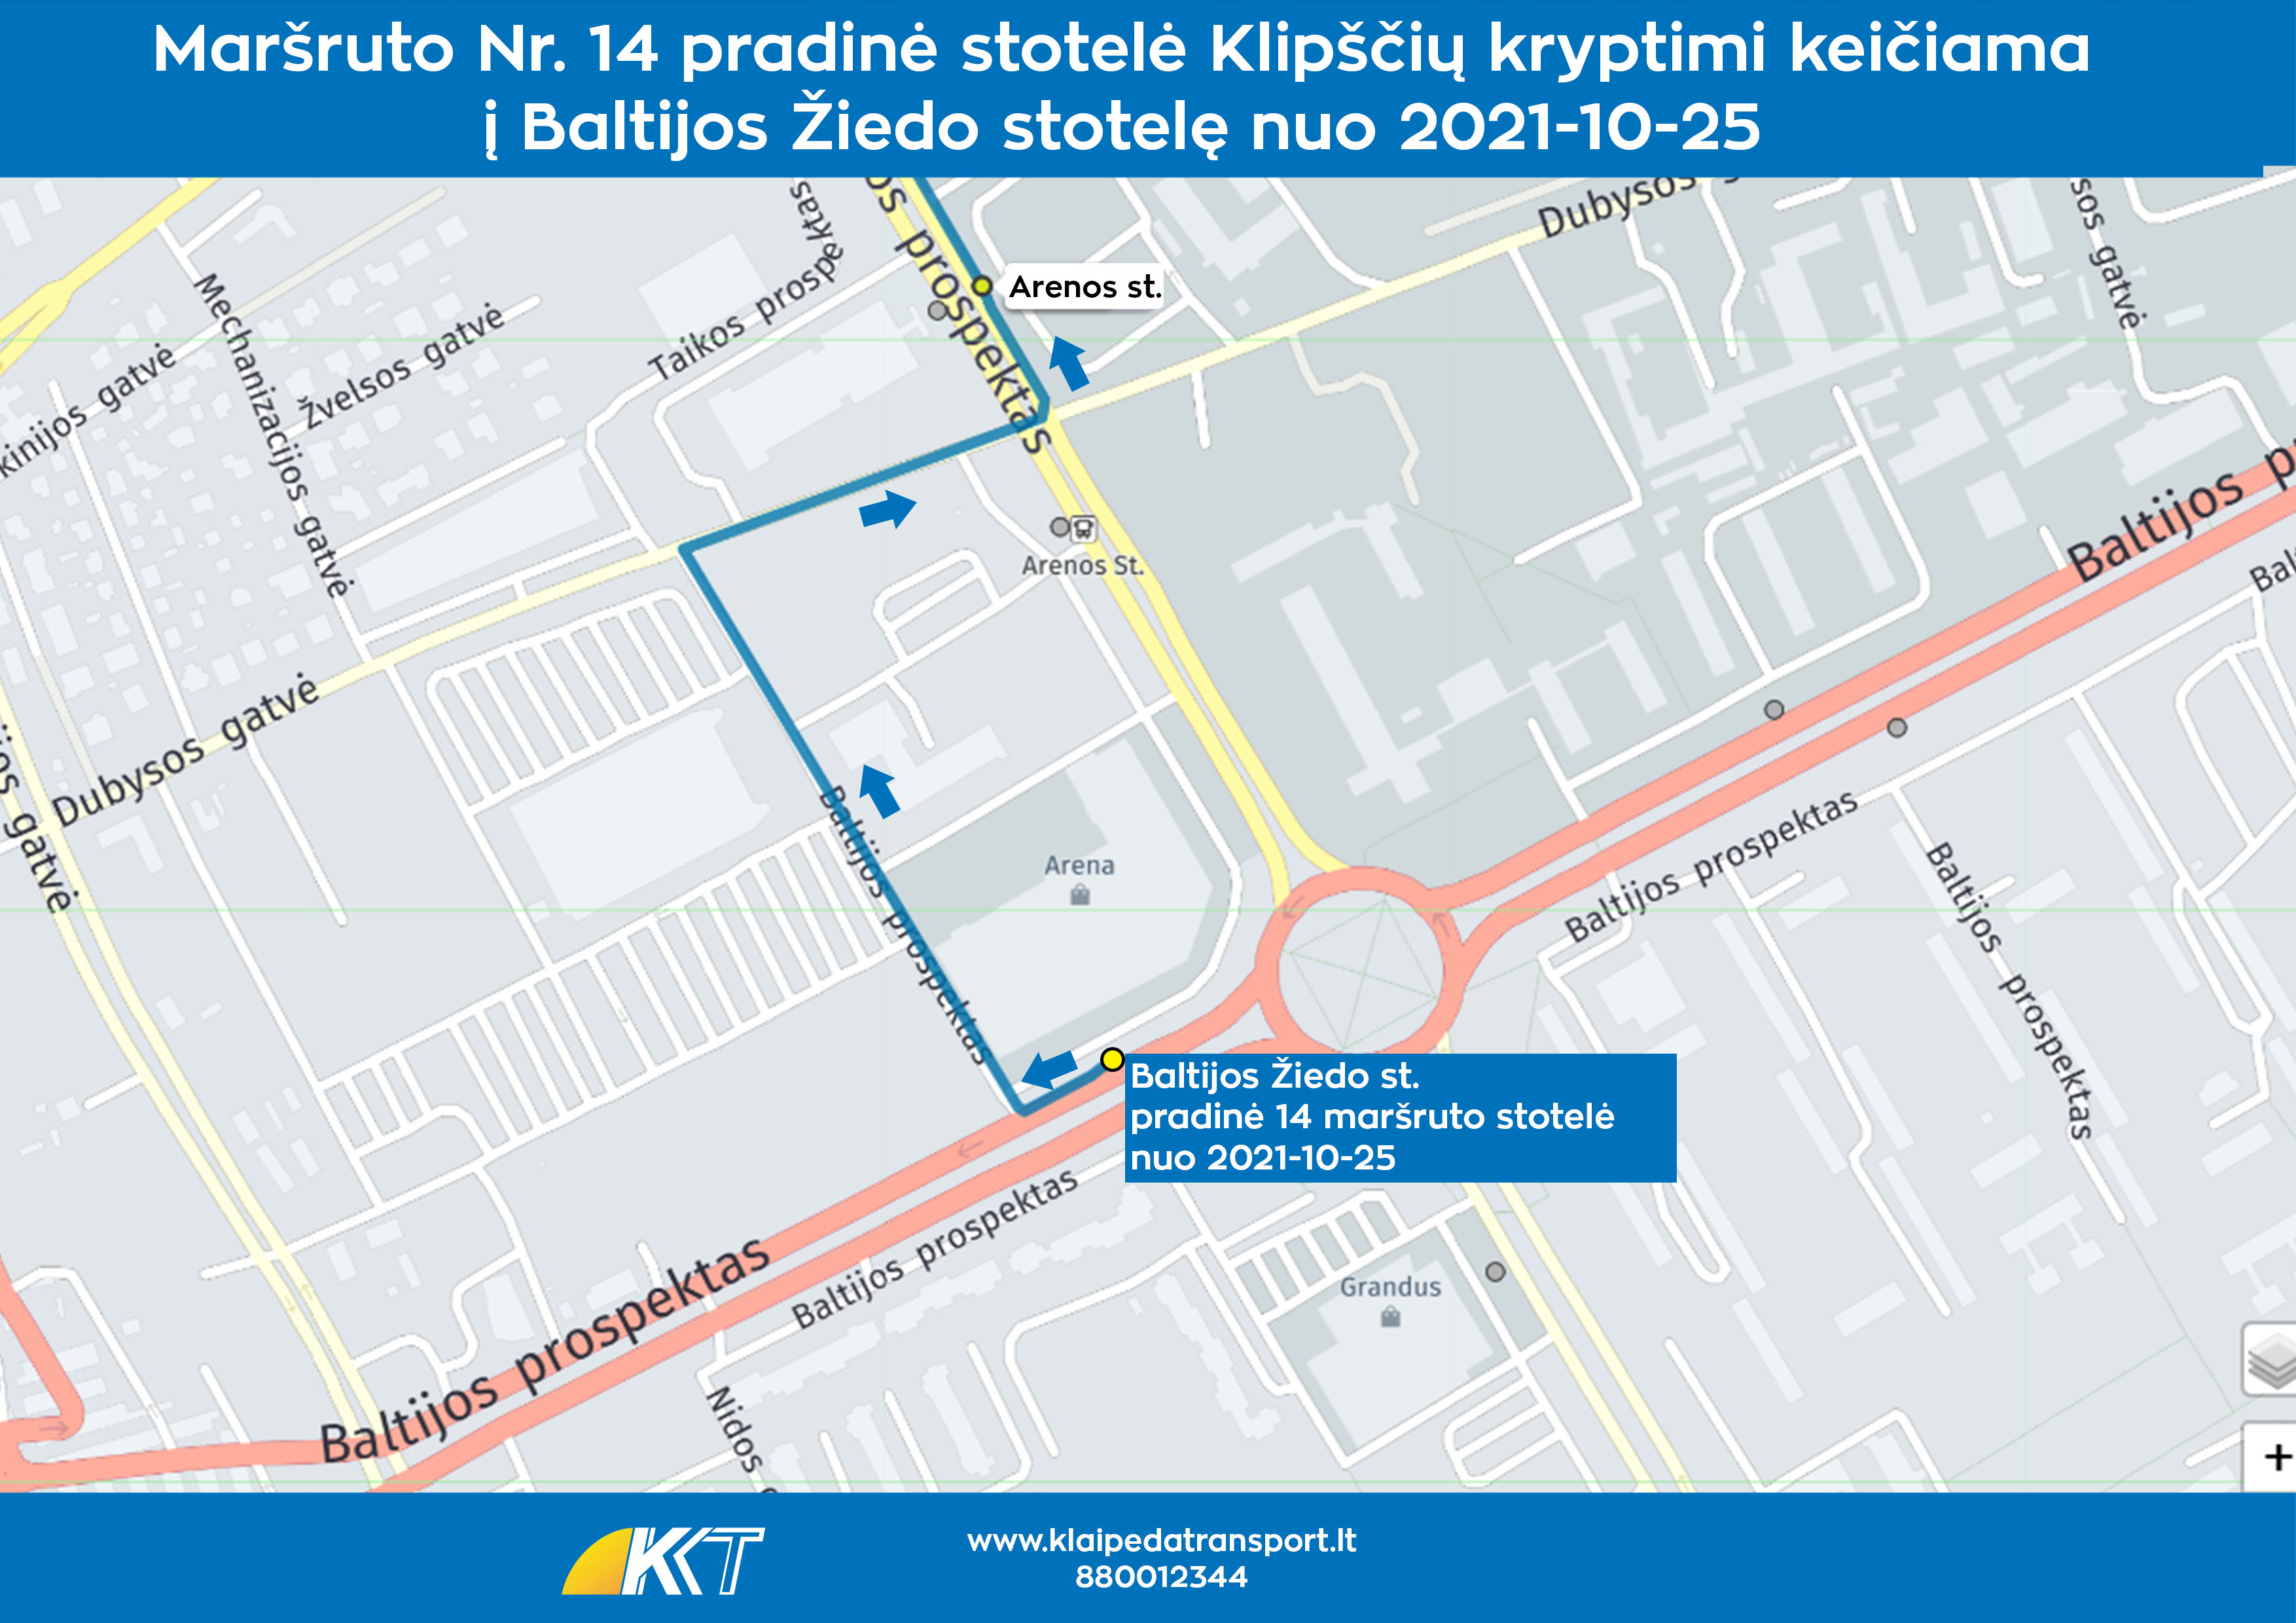 14 maršruto pradinė stotelė keičiama į Baltijos Žiedo stotelę nuo 2021-10-25